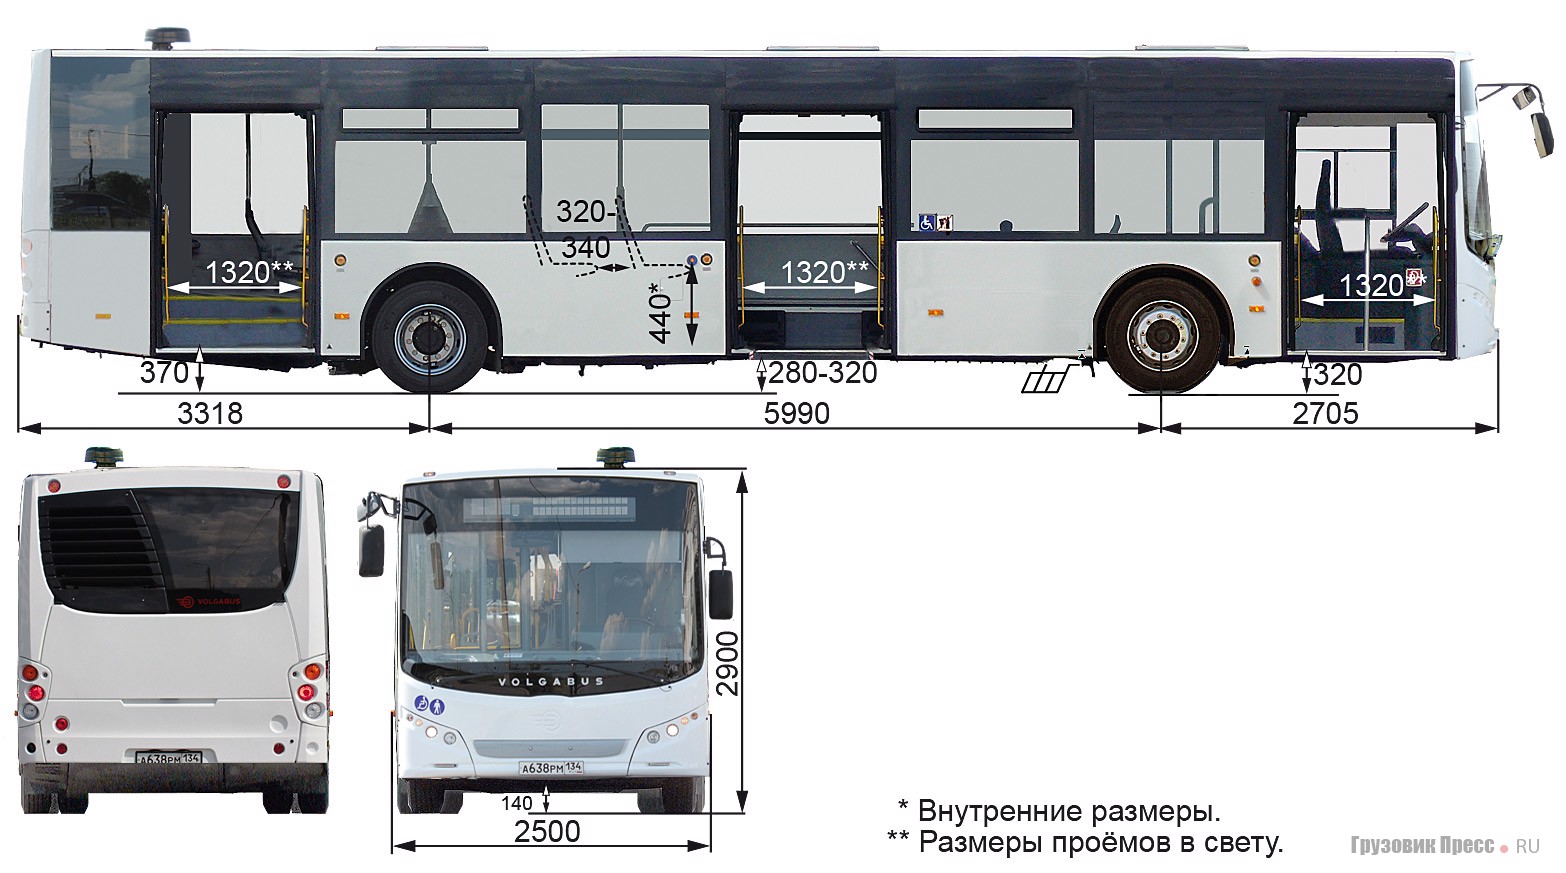 Автобус длиной 15 метров. Автобус МАЗ 203 габариты. Волжанин 5270 габариты. Габариты Волгабас 5270. Колесная база МАЗ 203.